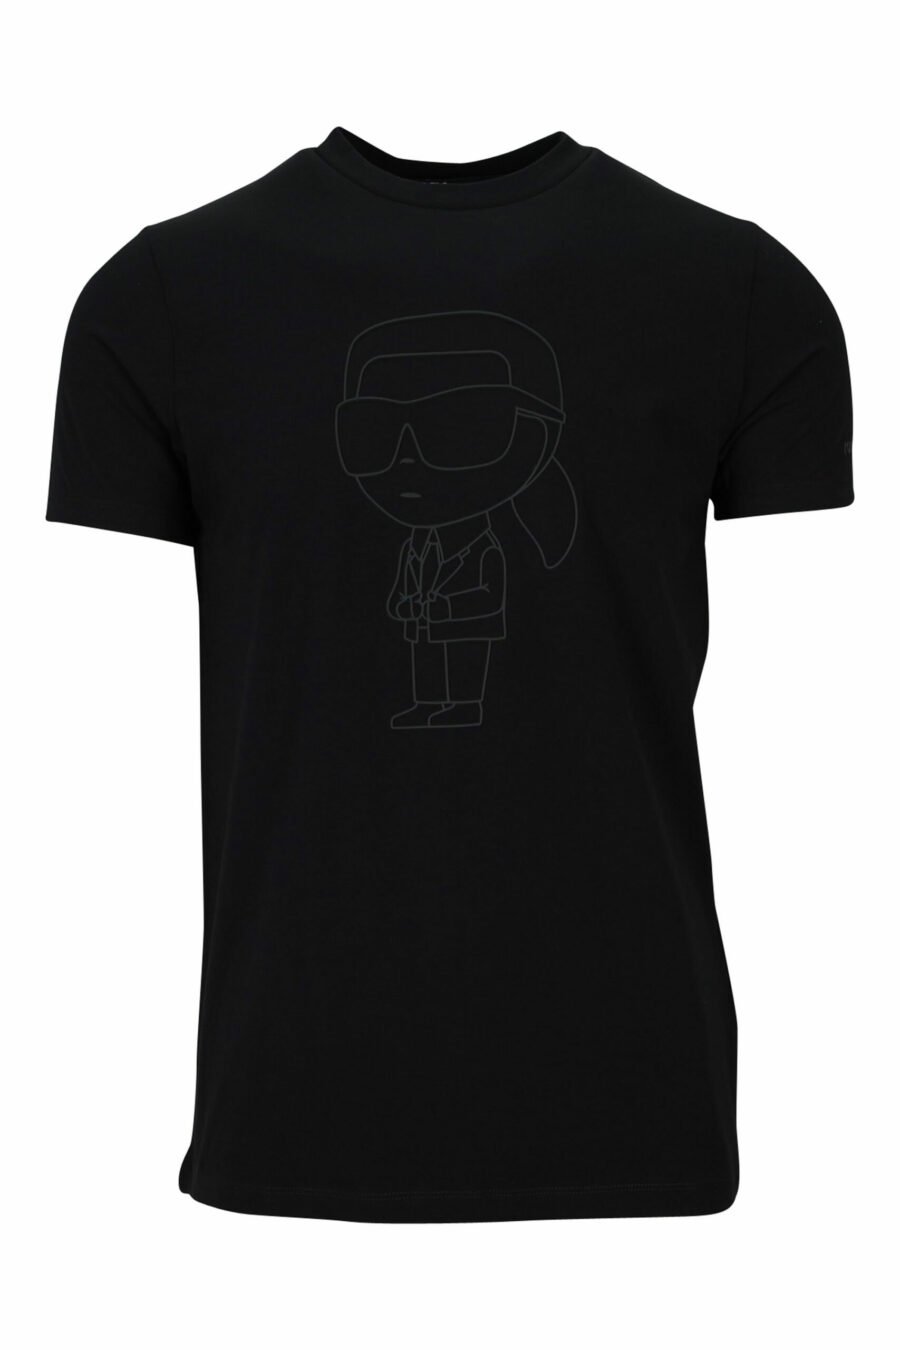 Black T-shirt with monochrome rubberised maxilogo - 4062226401425 scaled